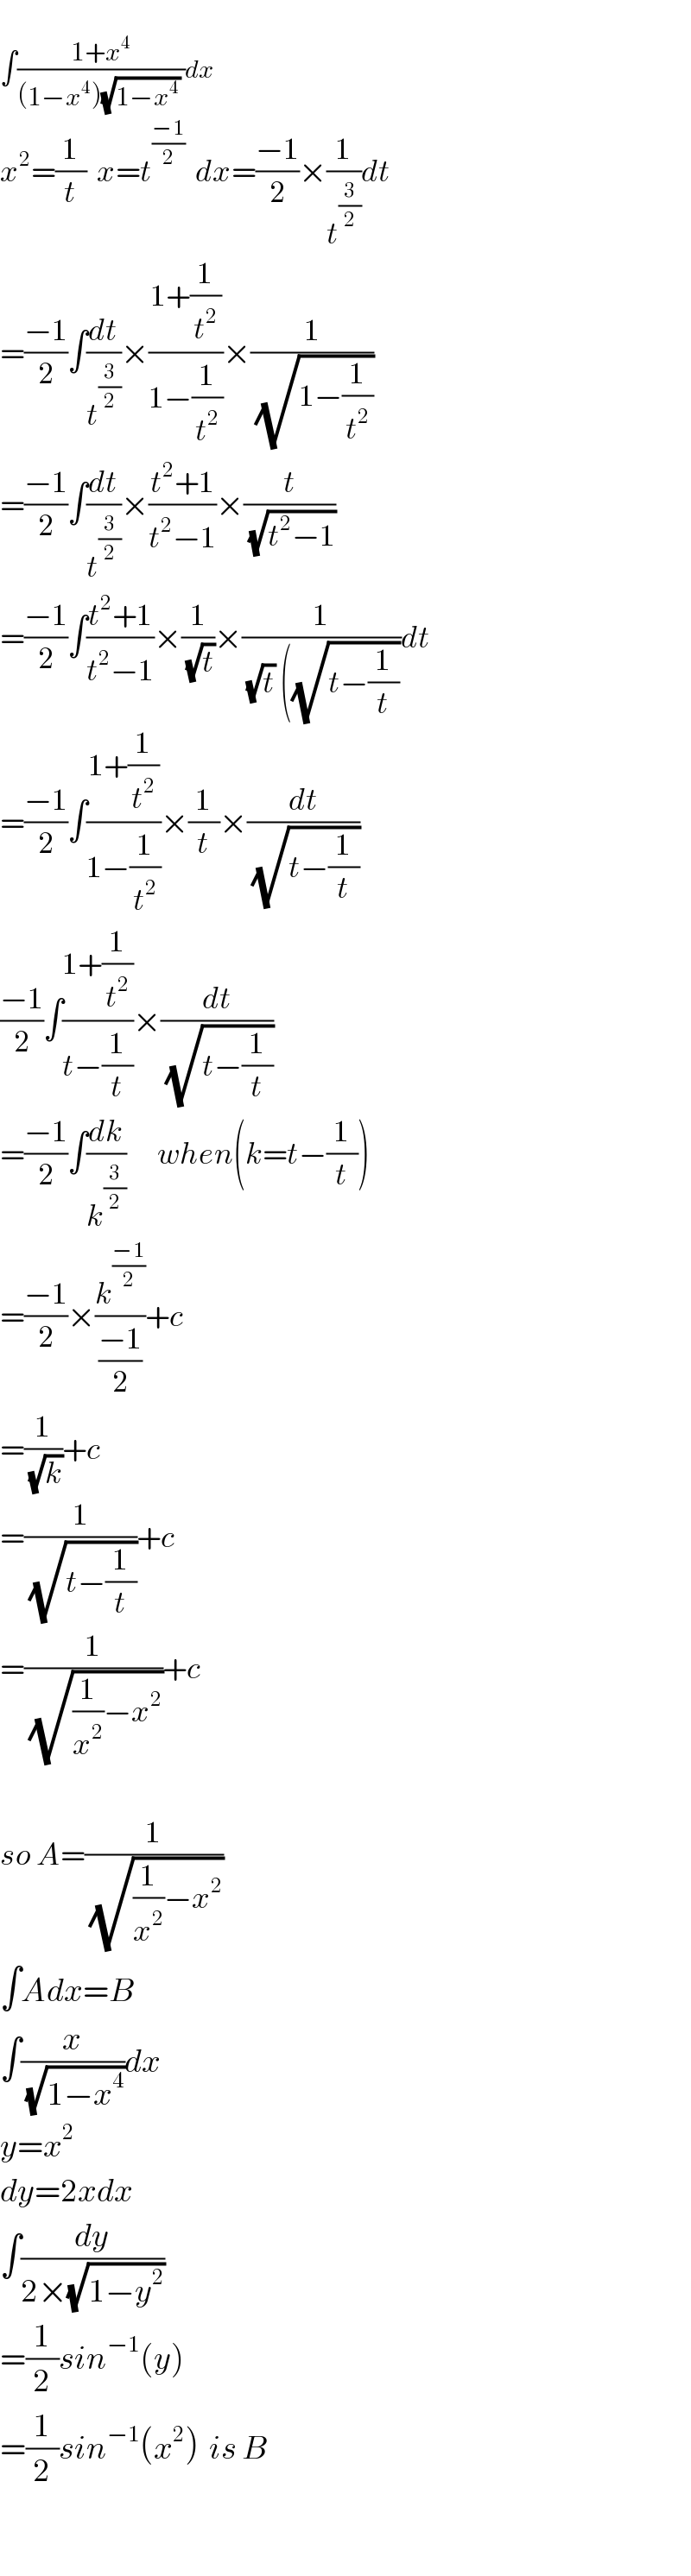   ∫((1+x^4 )/((1−x^4 )(√(1−x^4 )) ))dx  x^2 =(1/t)  x=t^((−1)/2)   dx=((−1)/2)×(1/t^(3/2) )dt  =((−1)/2)∫(dt/t^(3/2) )×((1+(1/t^2 ))/(1−(1/t^2 )))×(1/(√(1−(1/t^2 ))))  =((−1)/2)∫(dt/t^(3/2) )×((t^2 +1)/(t^2 −1))×(t/(√(t^2 −1)))  =((−1)/2)∫((t^2 +1)/(t^2 −1))×(1/(√t))×(1/((√t) ((√(t−(1/t)))))dt  =((−1)/2)∫((1+(1/t^2 ))/(1−(1/t^2 )))×(1/t)×(dt/(√(t−(1/t))))  ((−1)/2)∫((1+(1/t^2 ))/(t−(1/t)))×(dt/(√(t−(1/t))))  =((−1)/2)∫(dk/k^(3/2) )      when(k=t−(1/t))  =((−1)/2)×(k^((−1)/2) /((−1)/2))+c  =(1/(√k))+c  =(1/(√(t−(1/t))))+c  =(1/(√((1/x^2 )−x^2 )))+c    so A=(1/(√((1/x^2 )−x^2 )))  ∫Adx=B  ∫(x/(√(1−x^4 )))dx   y=x^2   dy=2xdx  ∫(dy/(2×(√(1−y^2 ))))  =(1/2)sin^(−1) (y)  =(1/2)sin^(−1) (x^2 )  is B    